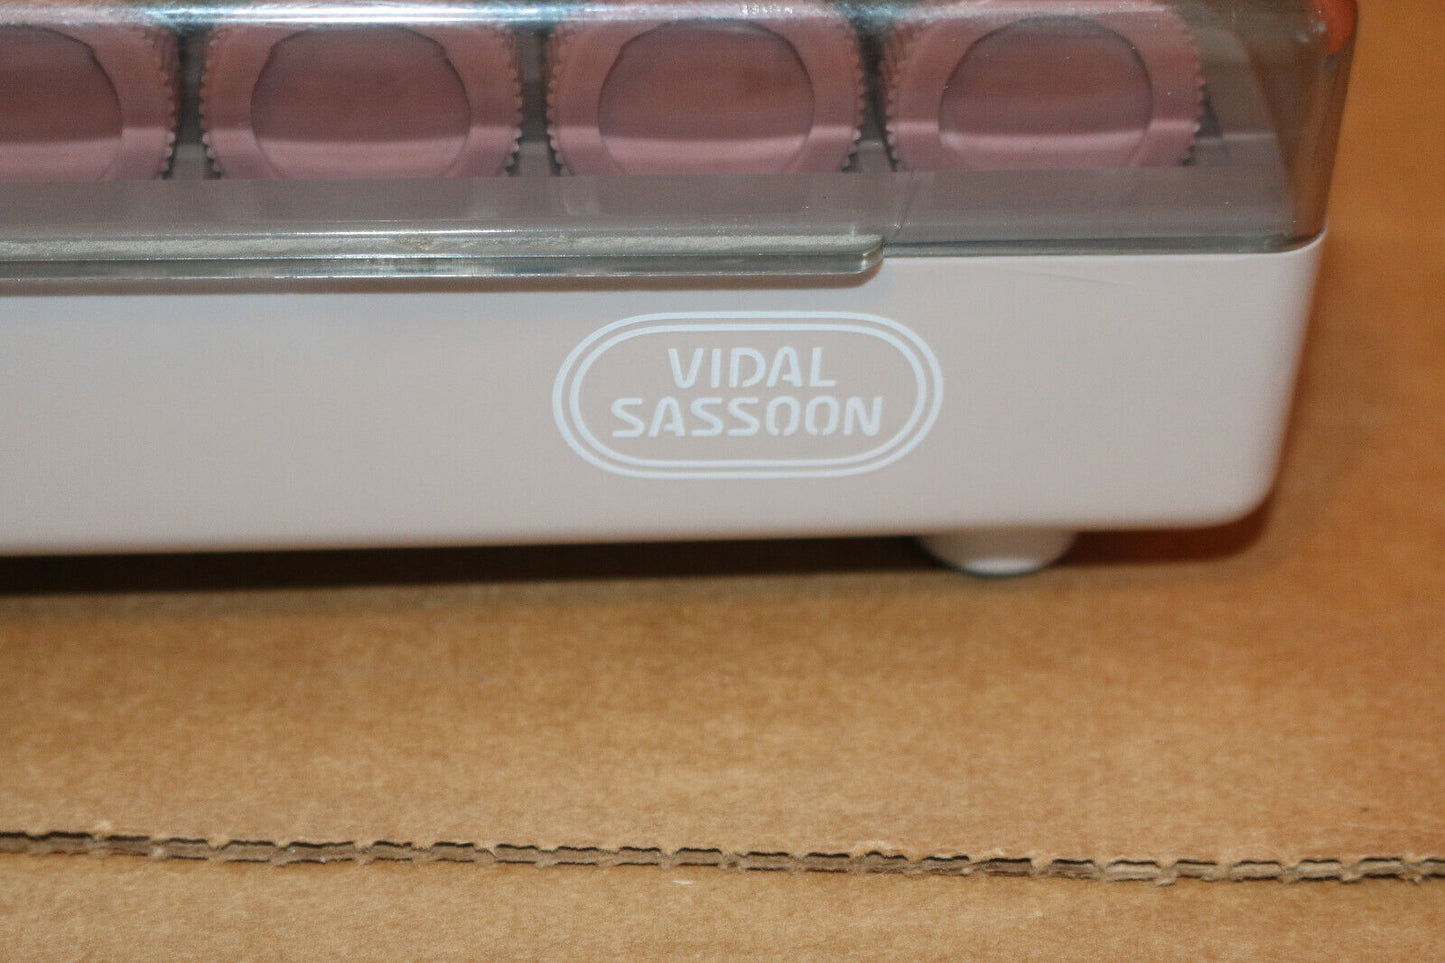 Vidal Sassoon Slimline Hairsetter Vs370 Hot Curlers 20 Velvet Rollers With Clips